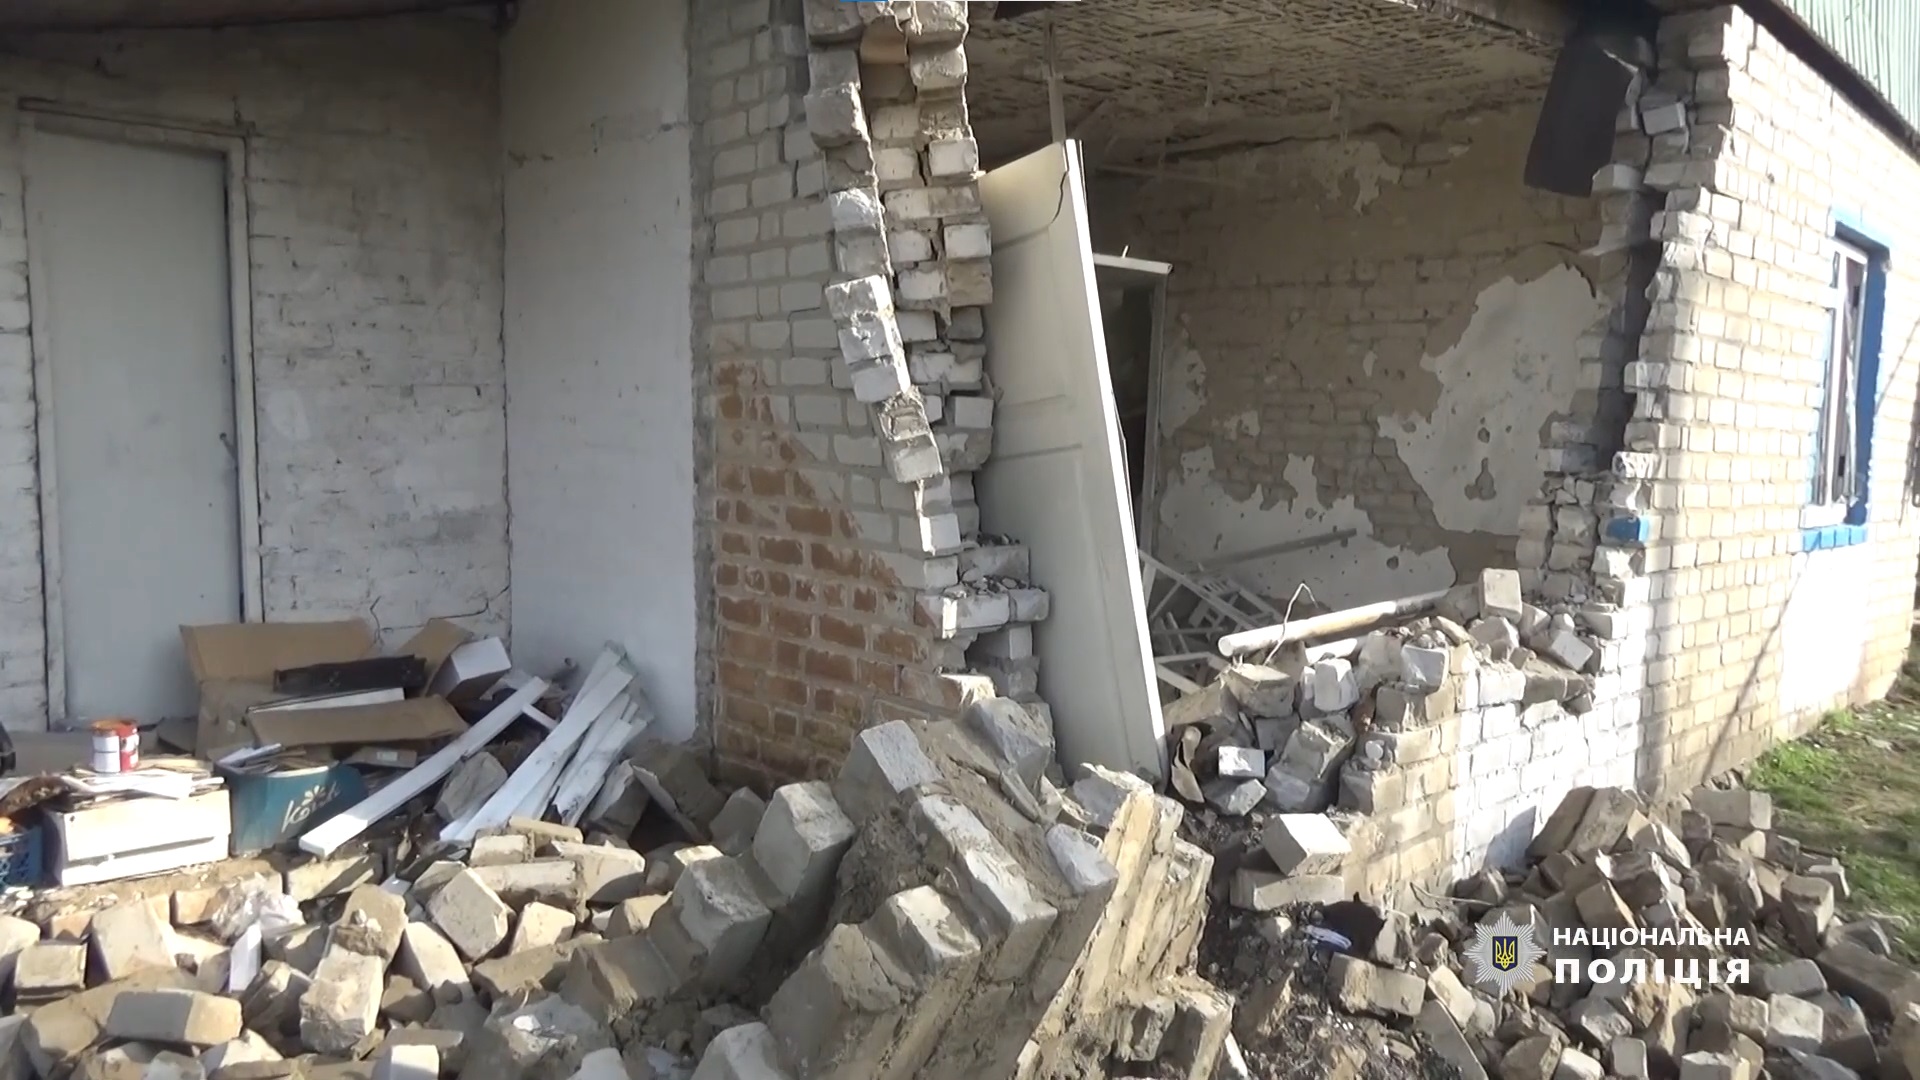 В селе Коровий Яр в Донецкой области осталось 90 жителей, среди них 7 детей, а большинство домов разрушены (ФОТО) 2